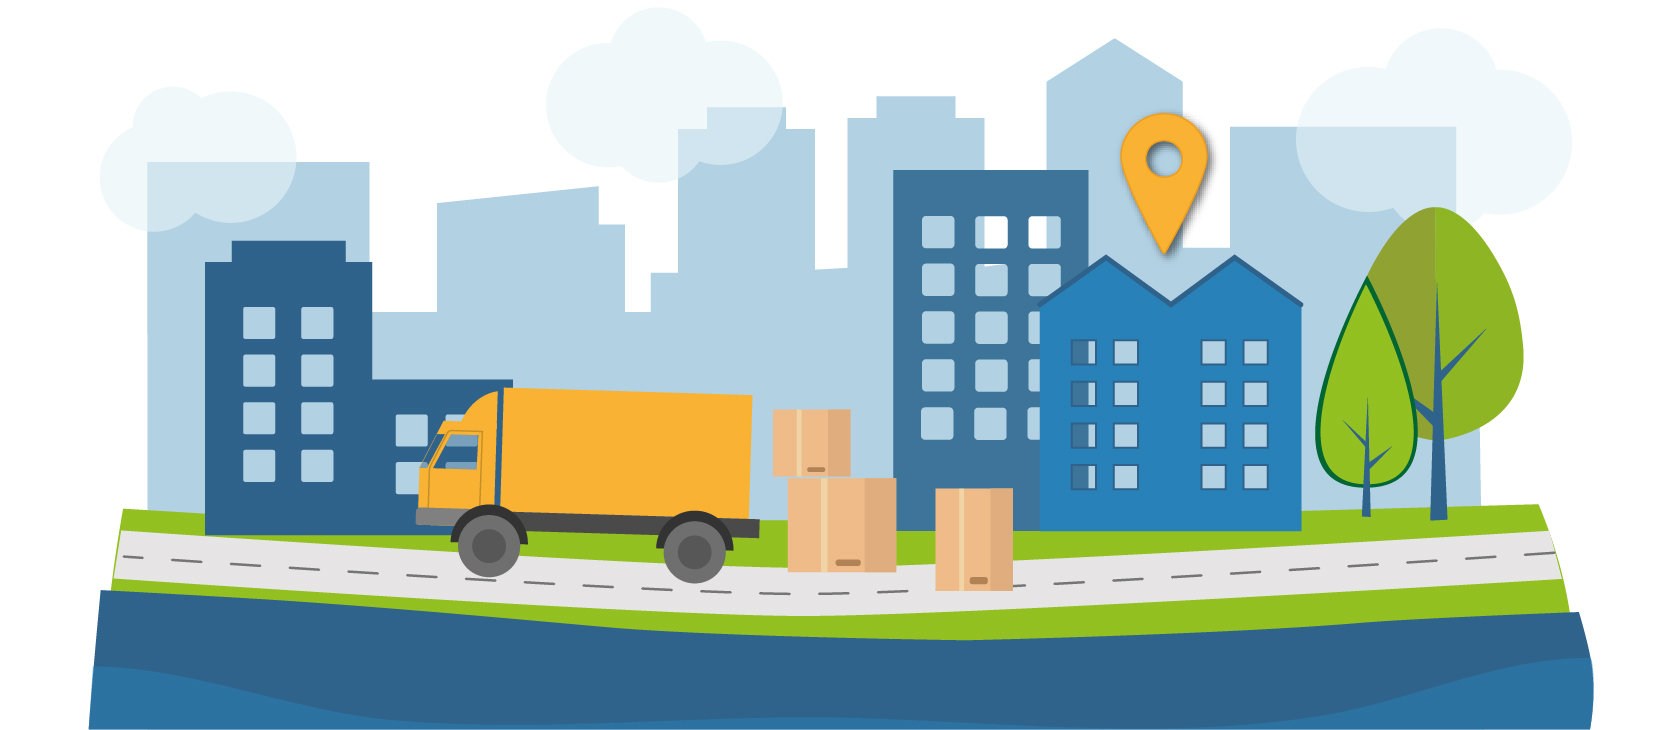 Illustration som symboliserar logistik och paketleveranser i stadskärnan